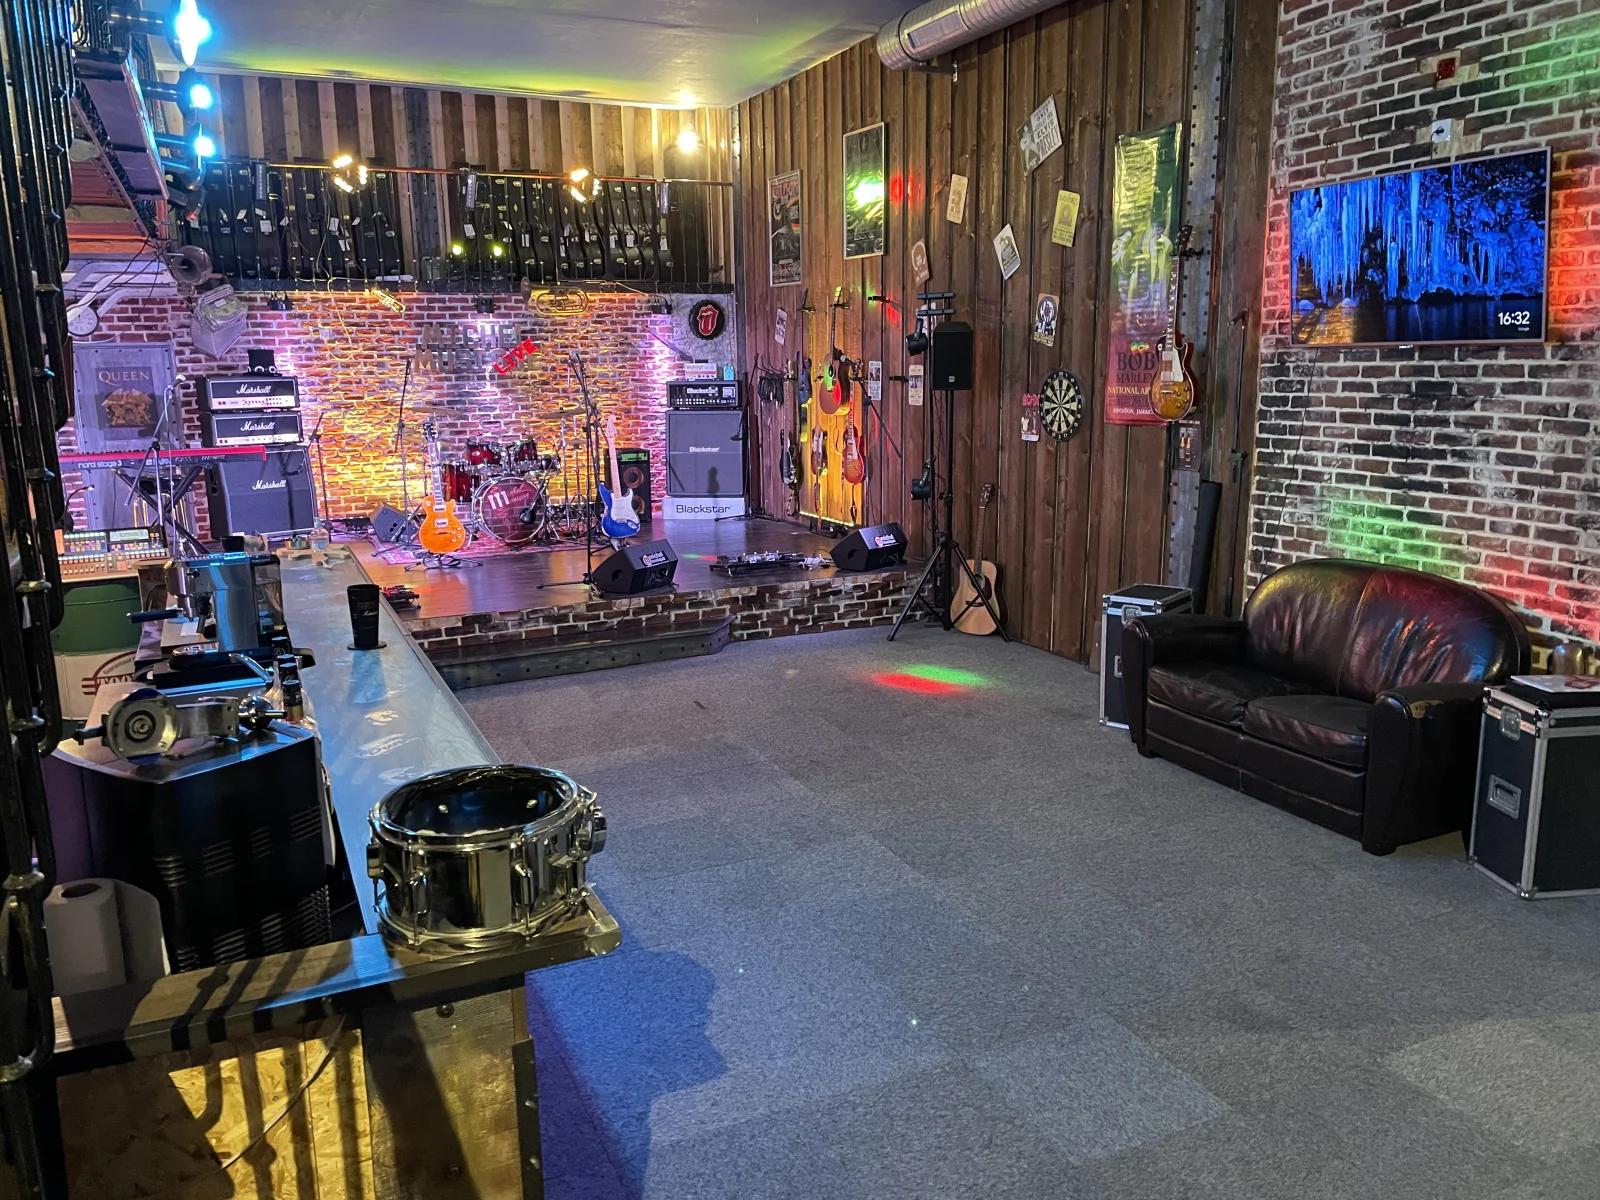 Living room in New York club atmosphere - 2